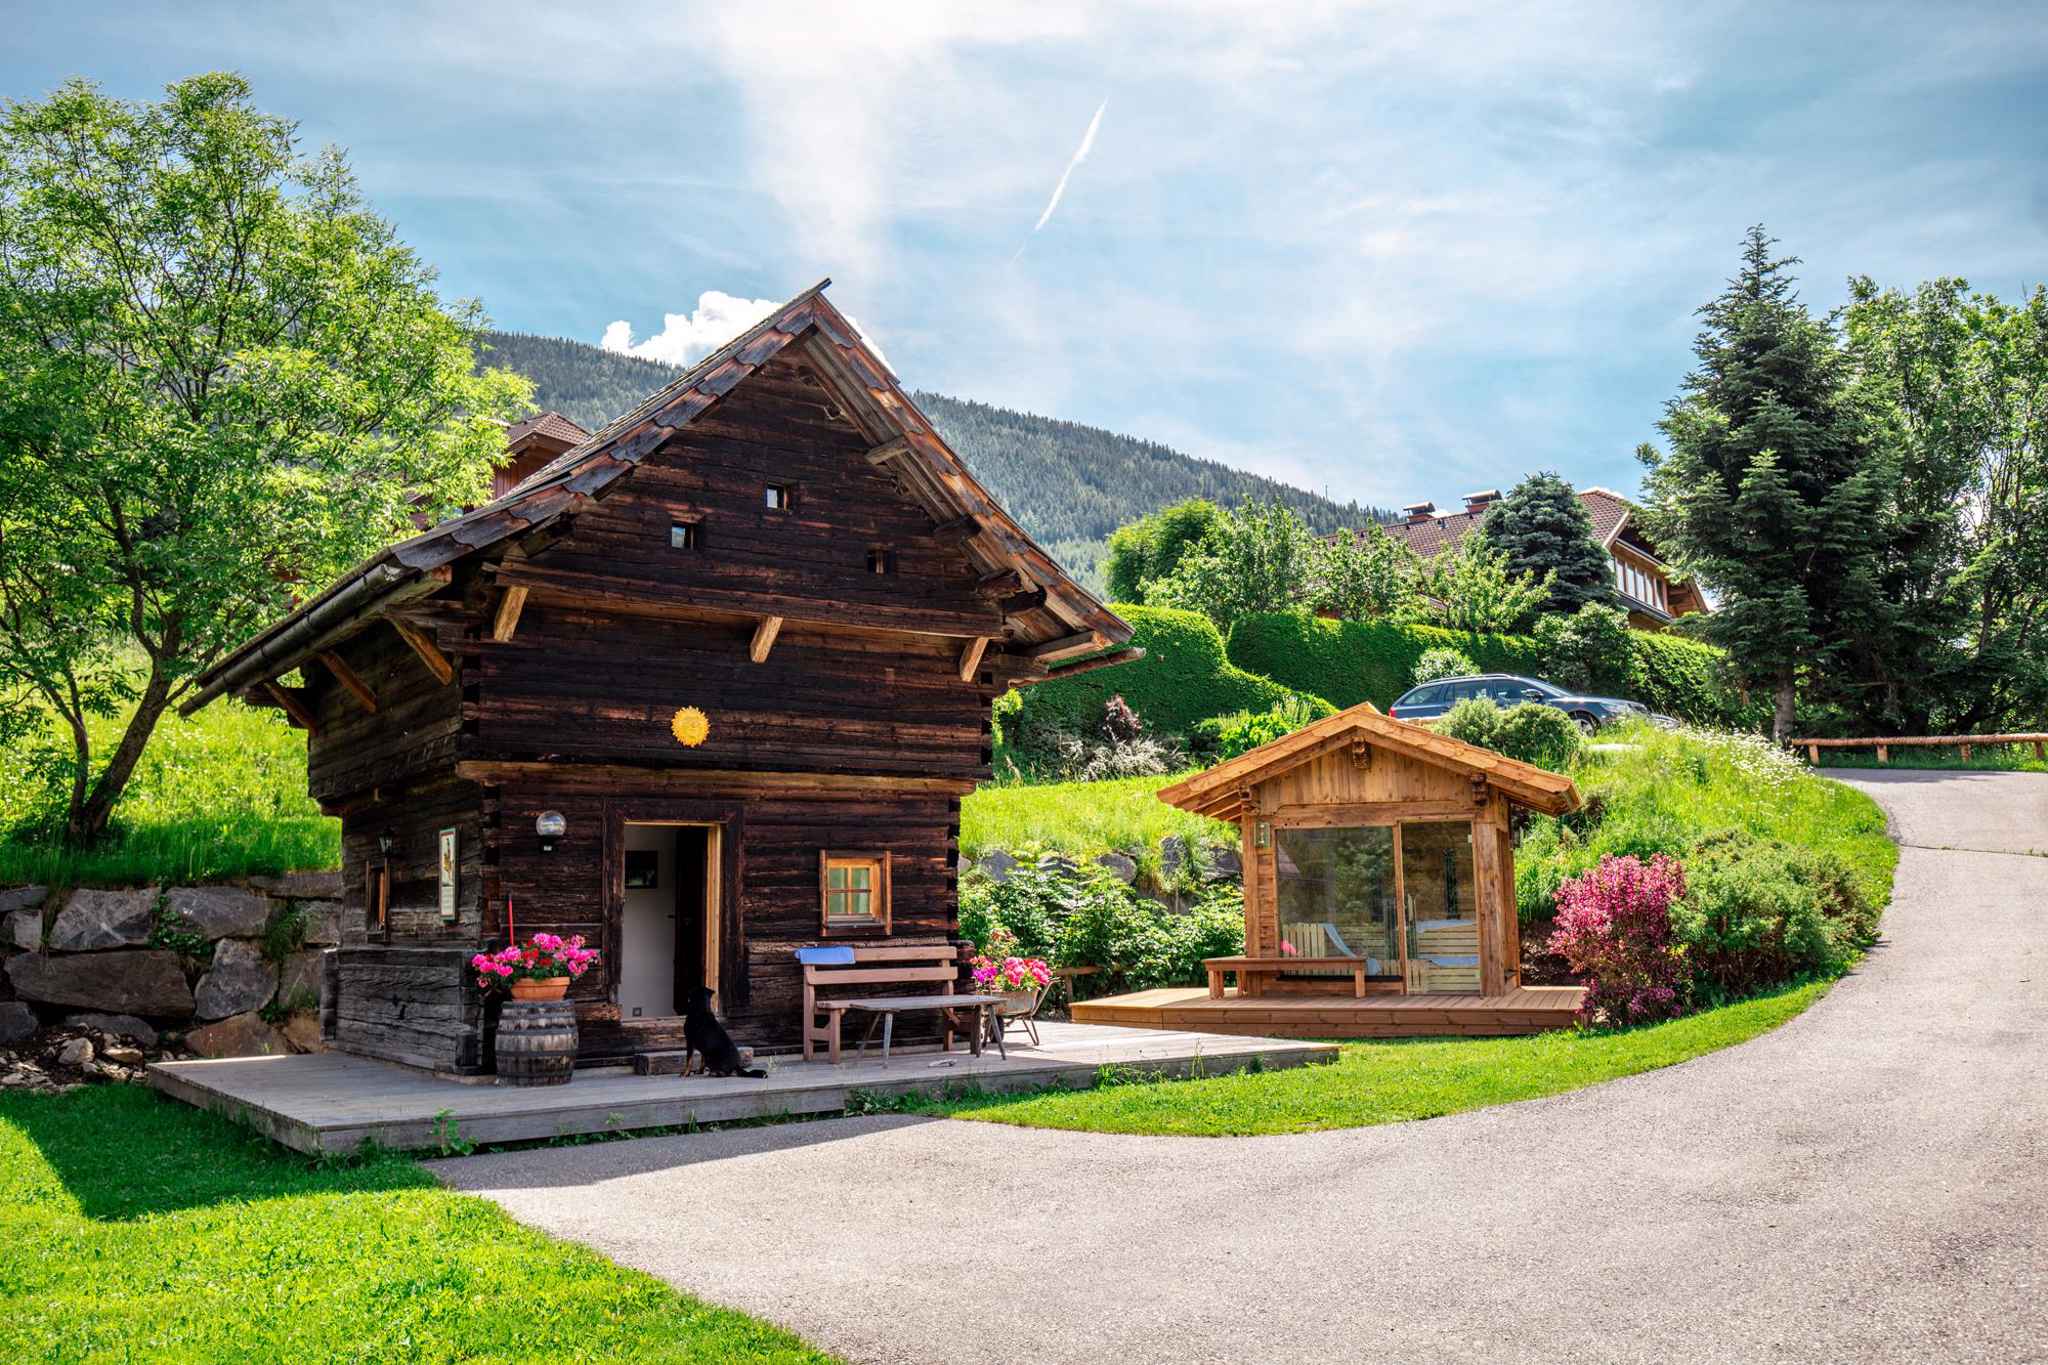 Hütte mit Panorama-Gartensauna Ferienhaus in Österreich